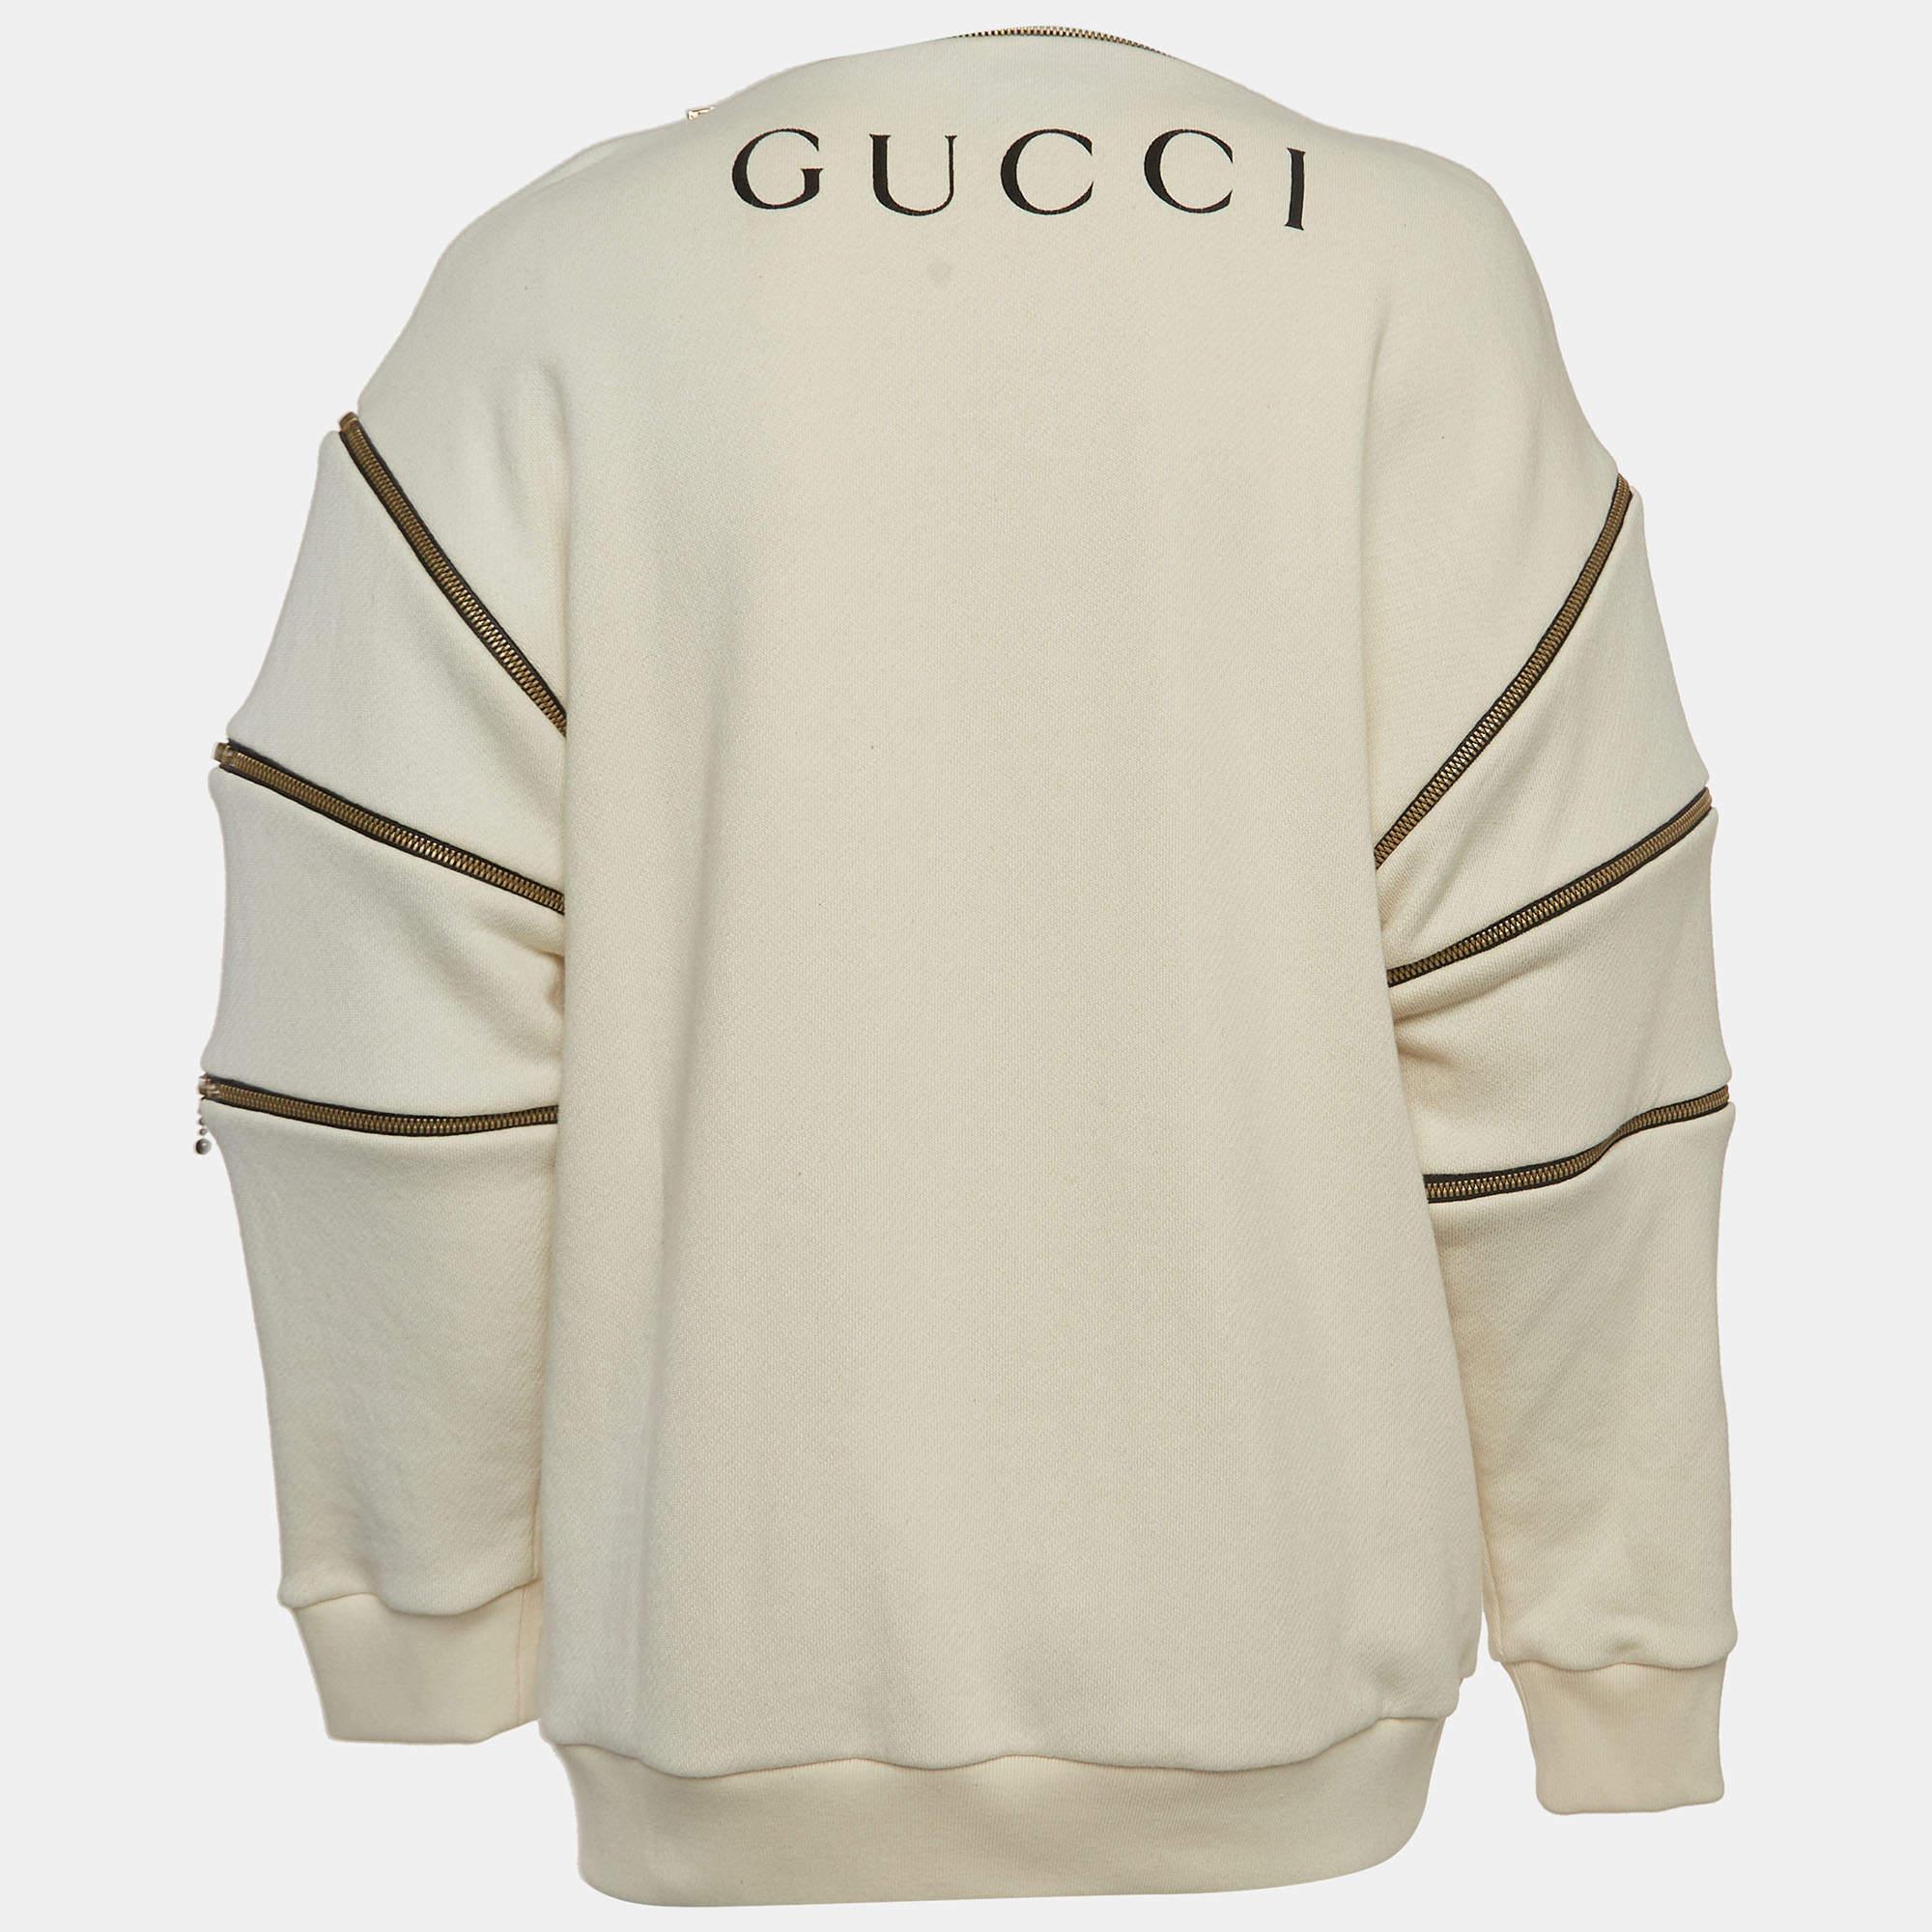 Das Gucci-Sweatshirt ist eine trendige Mischung aus Luxus und Streetwear. Sie ist aus hochwertiger Baumwolle gefertigt, verfügt über ein unverwechselbares Branding, einen Reißverschluss und verkörpert modernen Stil mit zeitloser Gucci-Raffinesse.

